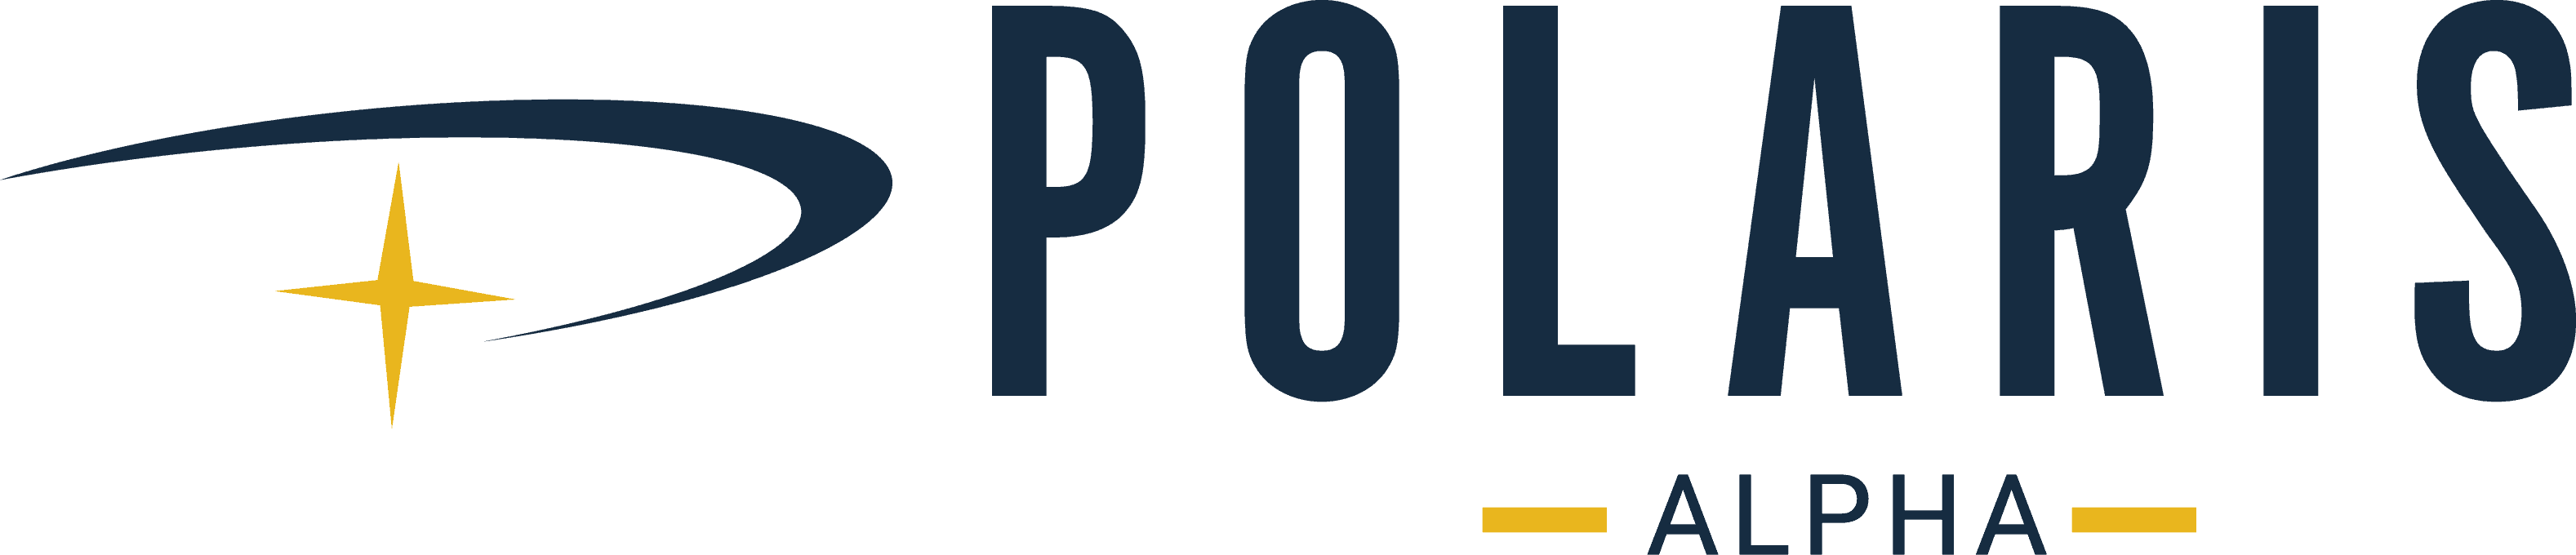 Polaris Alpha Logo